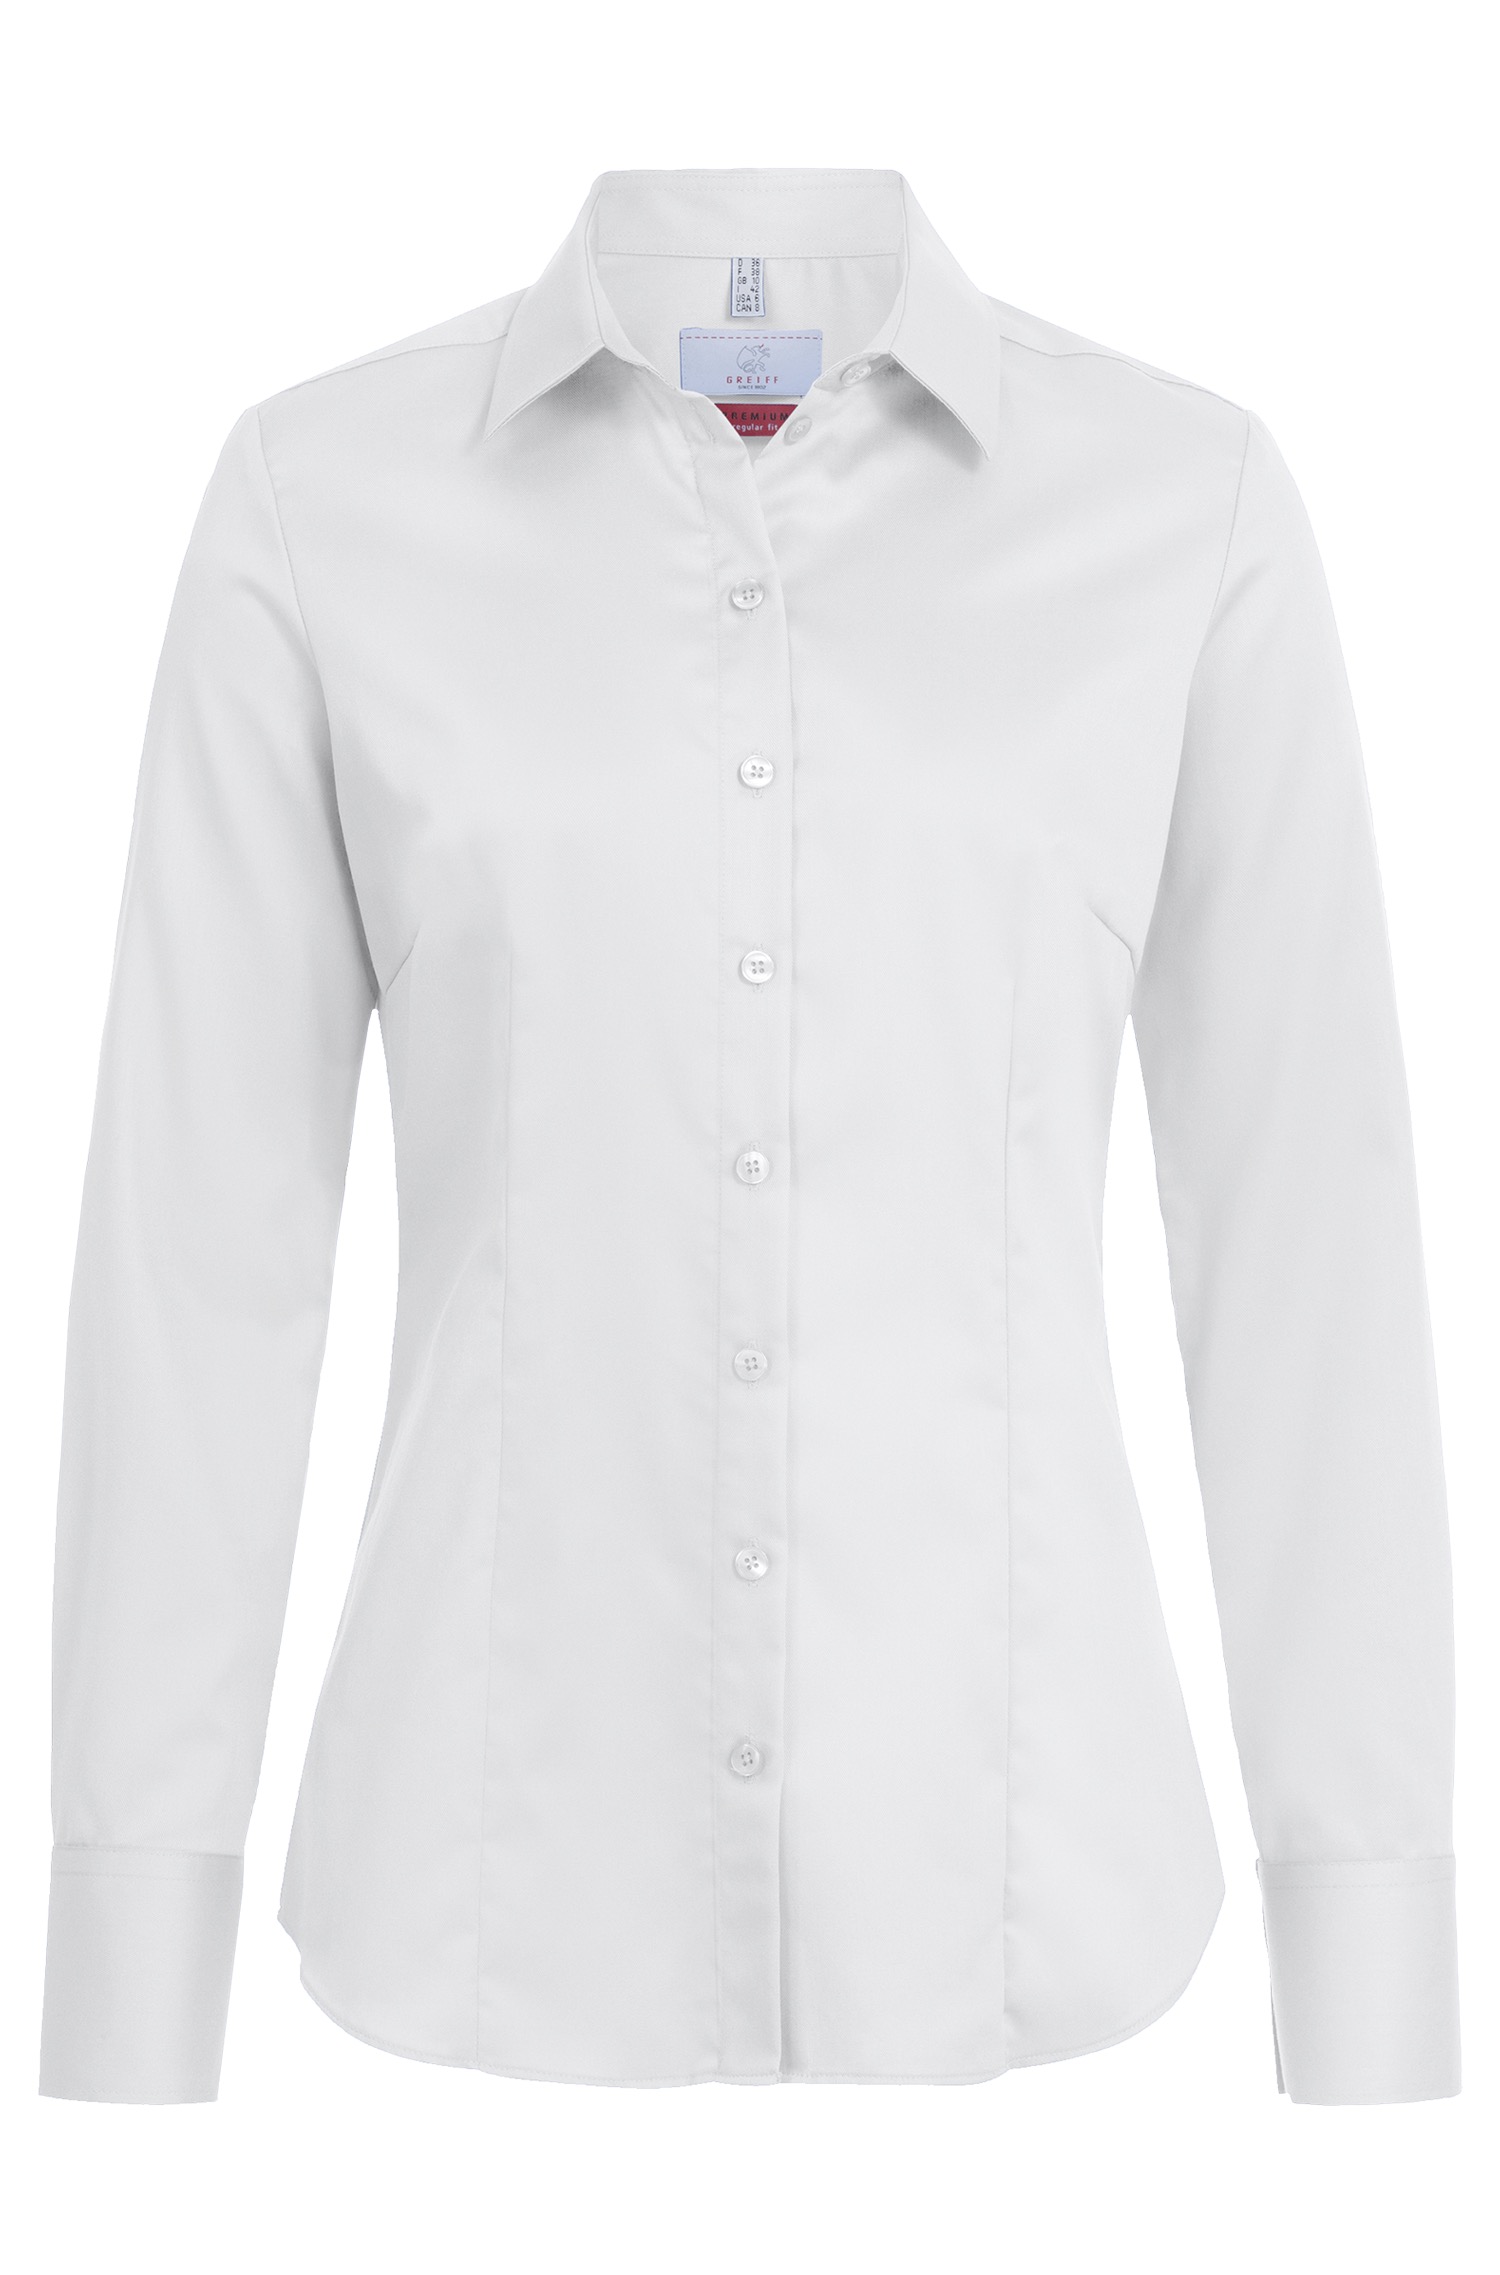 GREIFF Premium Damen-Bluse 1/1 Regular Fit